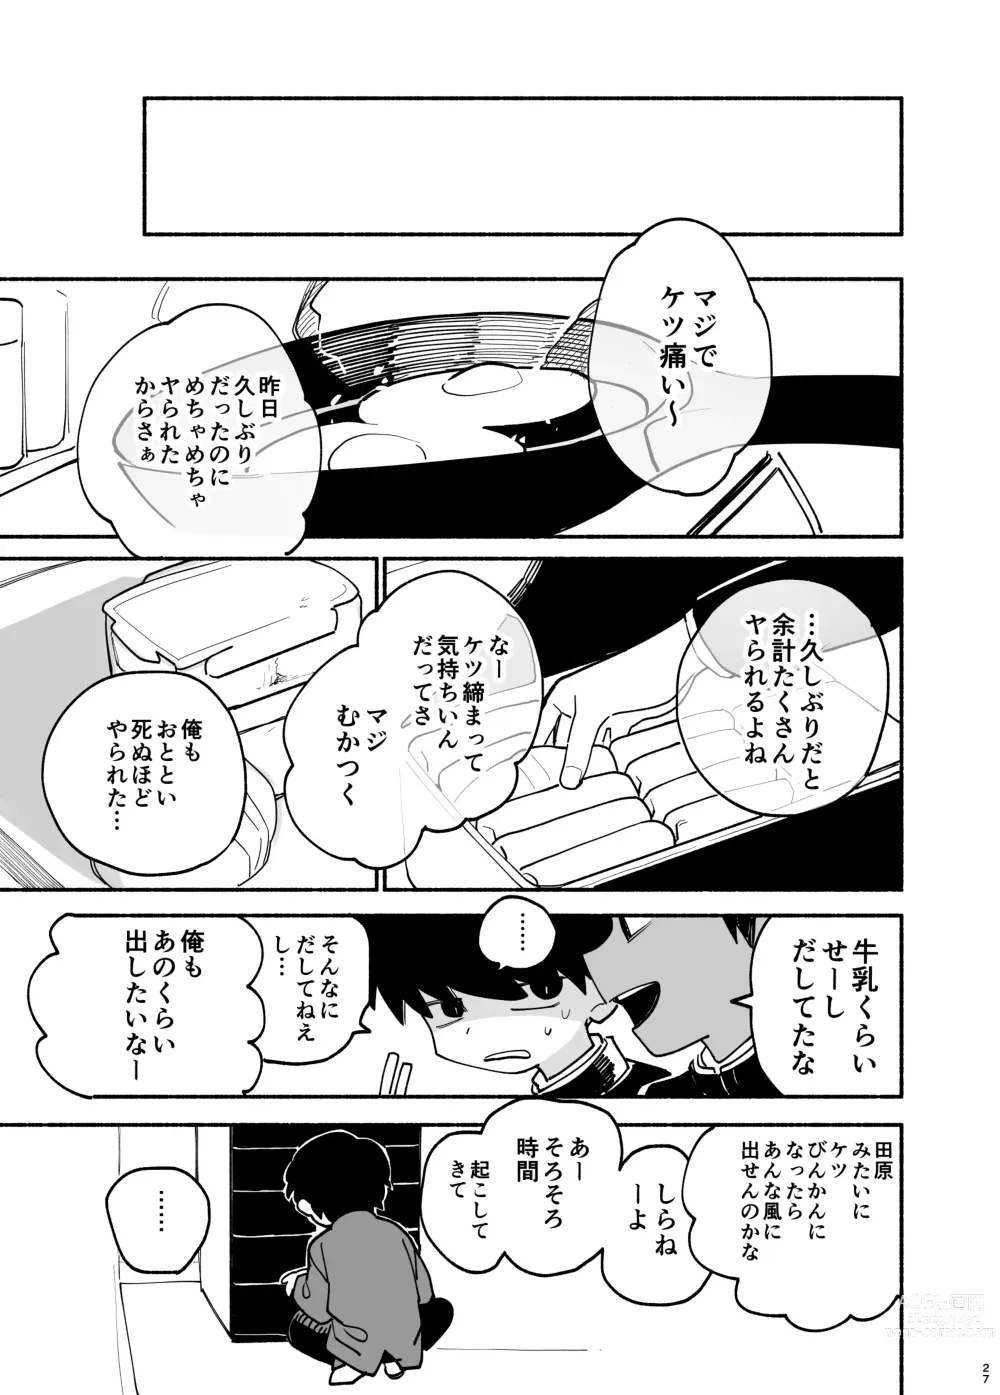 Page 28 of doujinshi Jisshou-sei wa minna ga daisuki